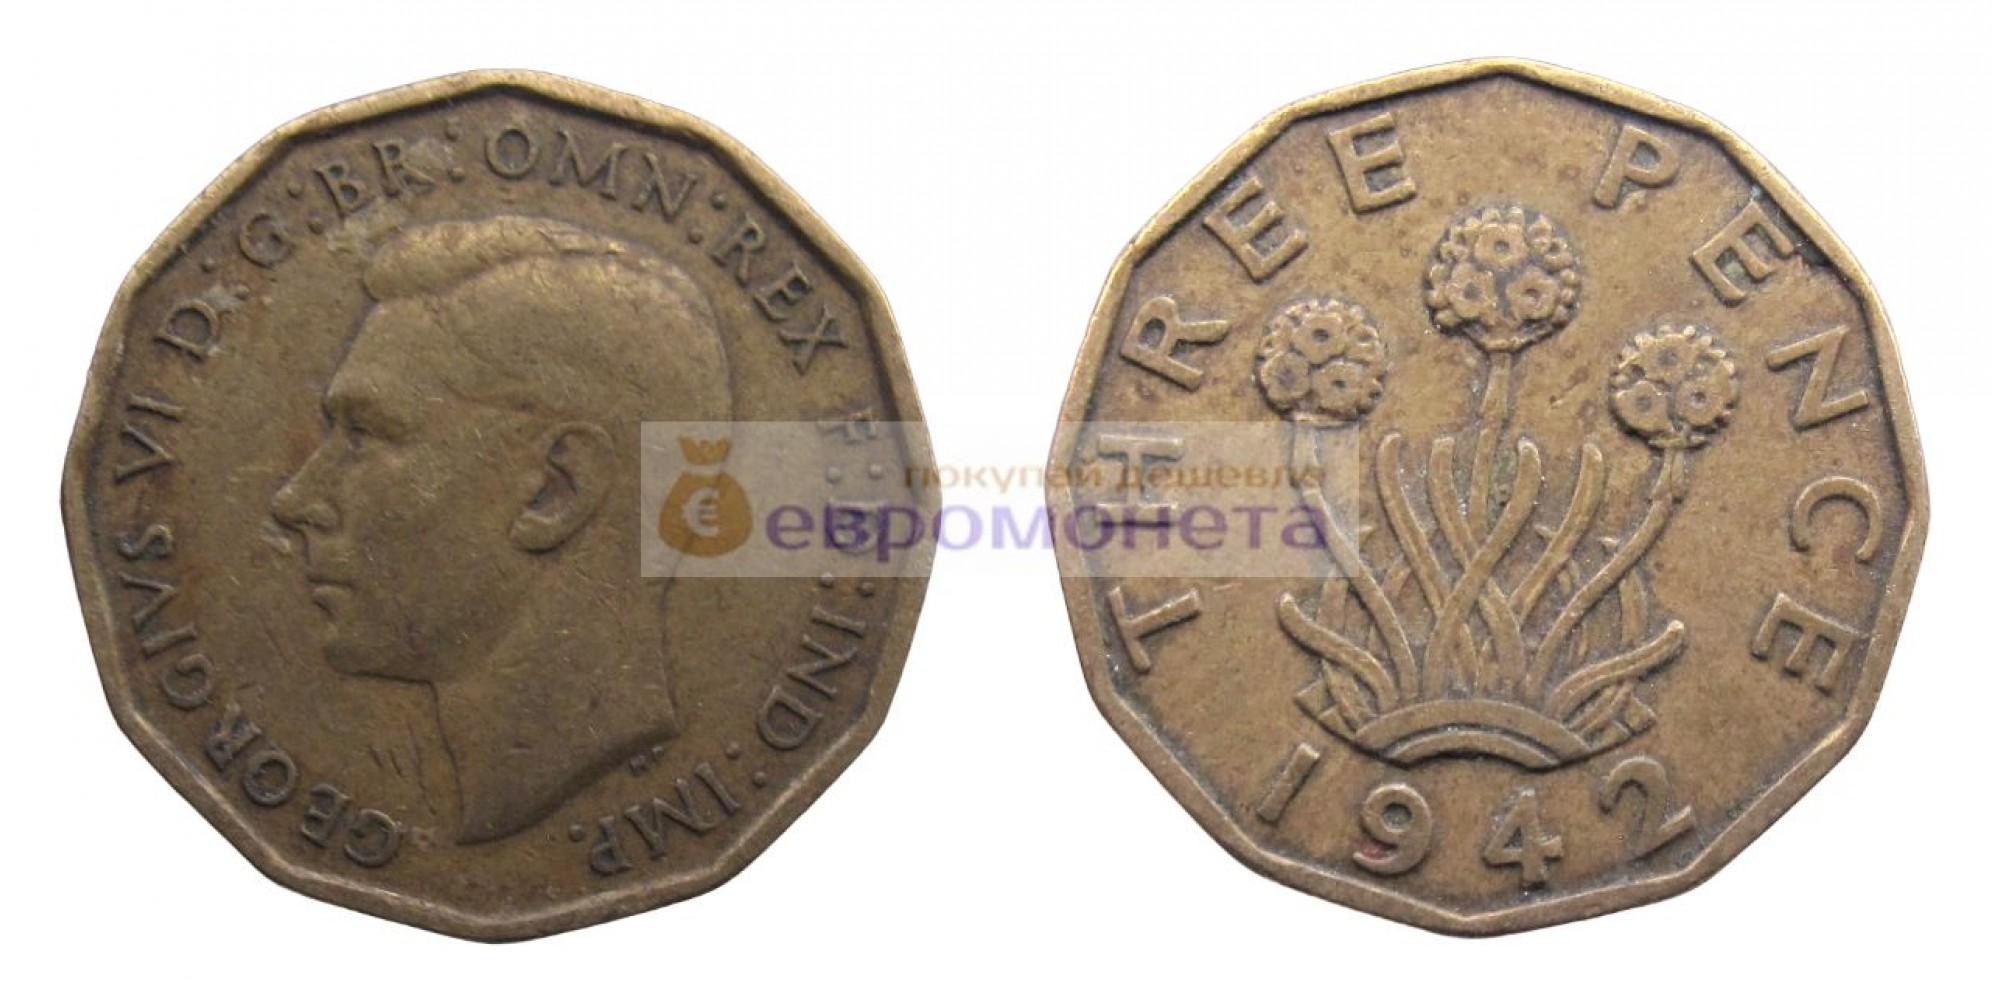 Великобритания 3 пенса 1942 год Никелевая латунь (жёлтый цвет). Король Георг VI